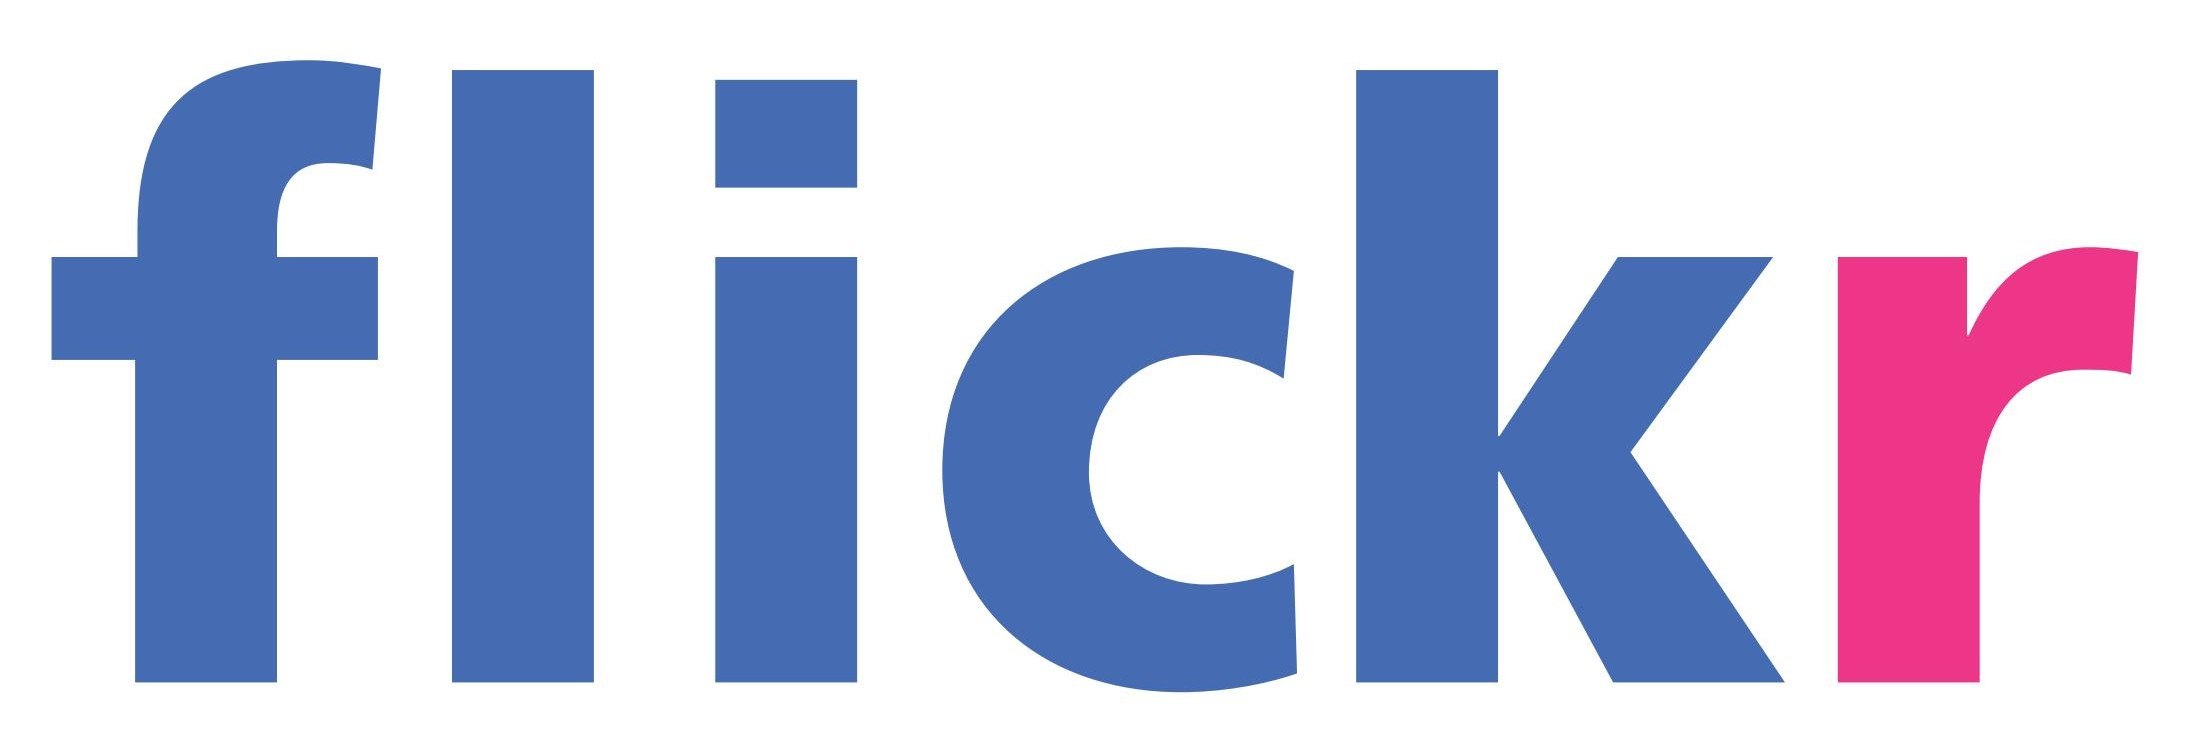 Flickr Logo Vector